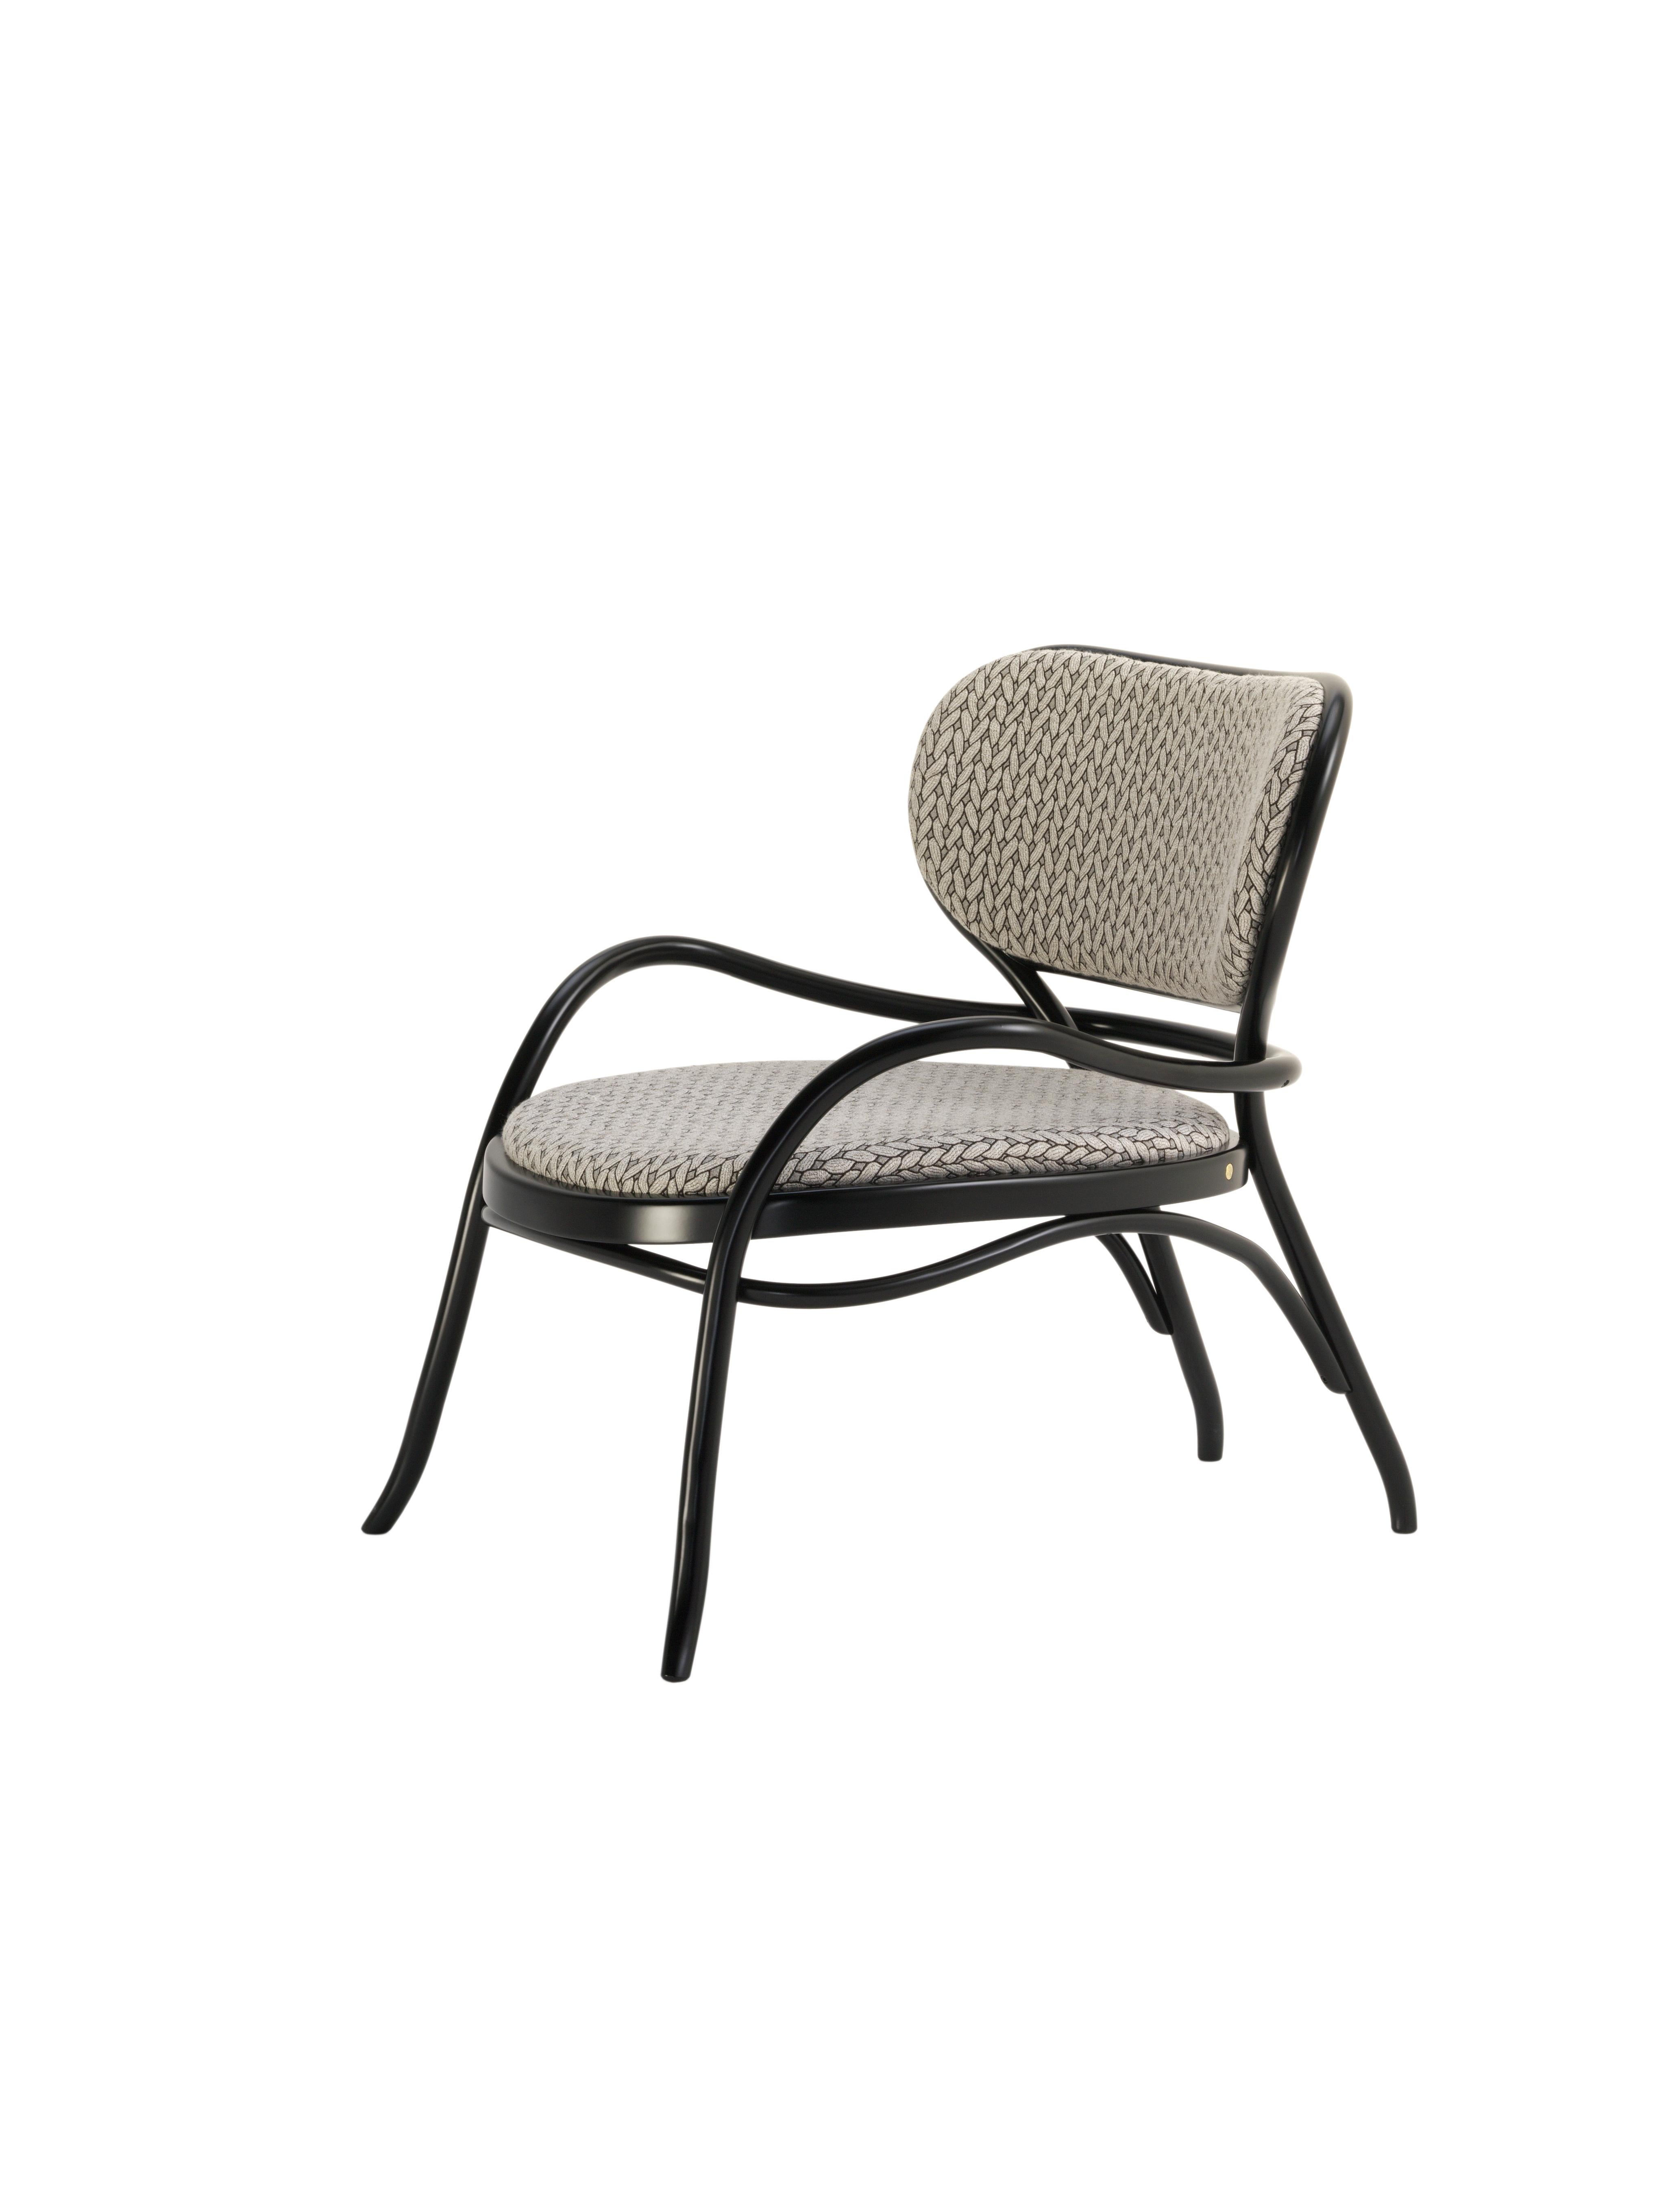 Nigel Coates a conçu une chaise longue sophistiquée au design complexe qui reflète les caractéristiques stylistiques de la marque avec une compétence raffinée. L'assise et le confortable dossier en bois de hêtre tissé, avec une version spéciale en